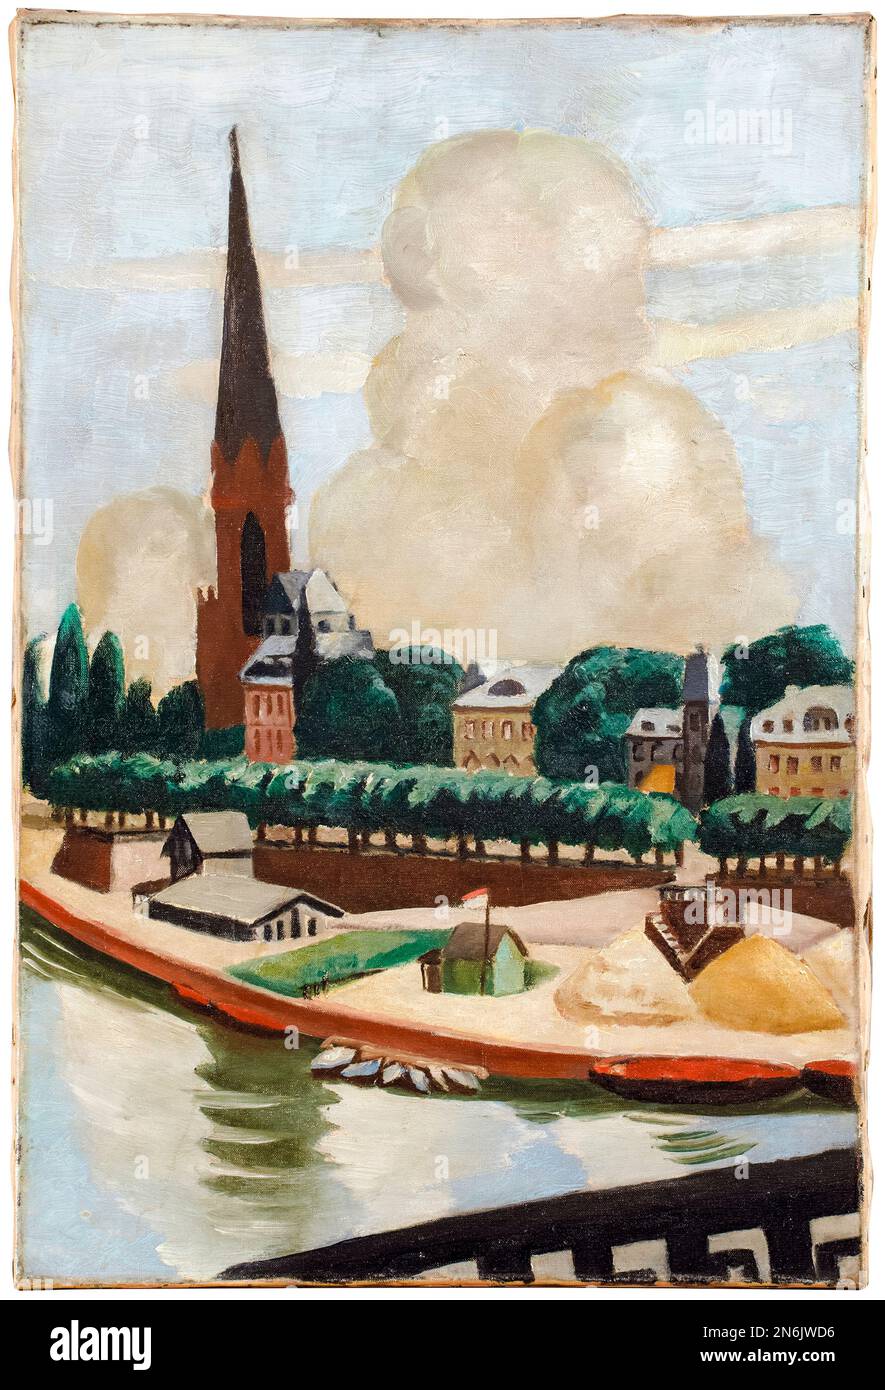 Max Beckmann, Banque du main et Église, peinture de paysage à l'huile sur toile, 1925 Banque D'Images